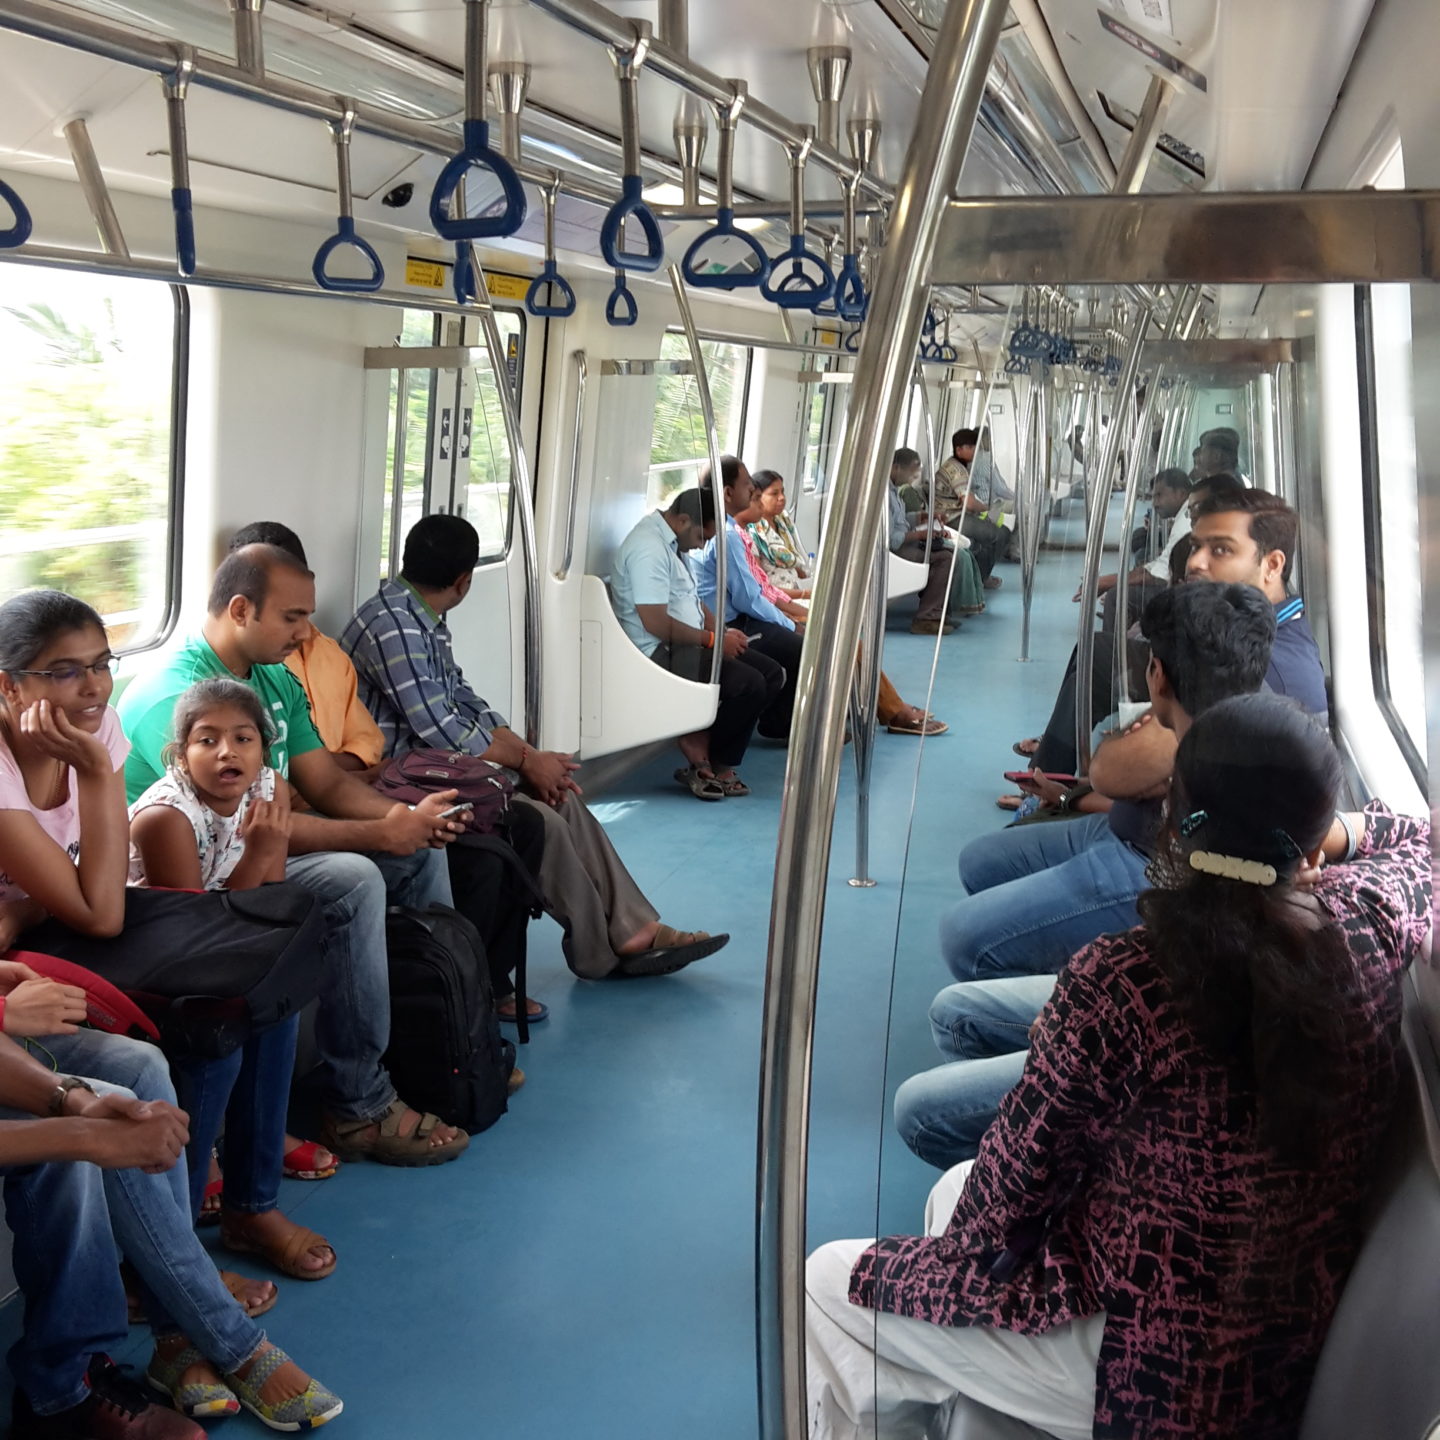 Für 10 bis 20 Rupien kommt man mit der Metro weit in der Stadt herum - ohne Staus